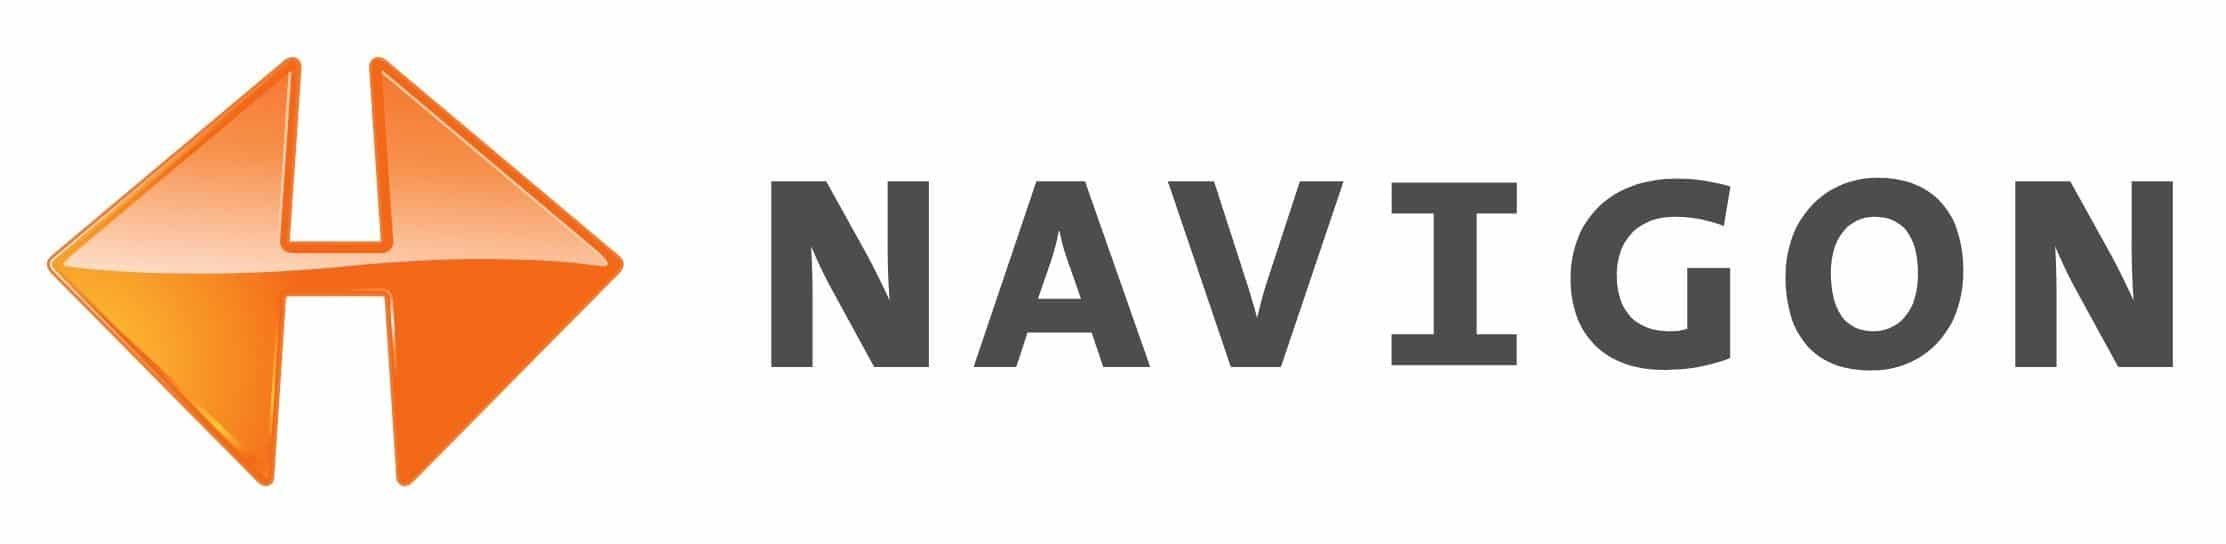 Navigon-Logo